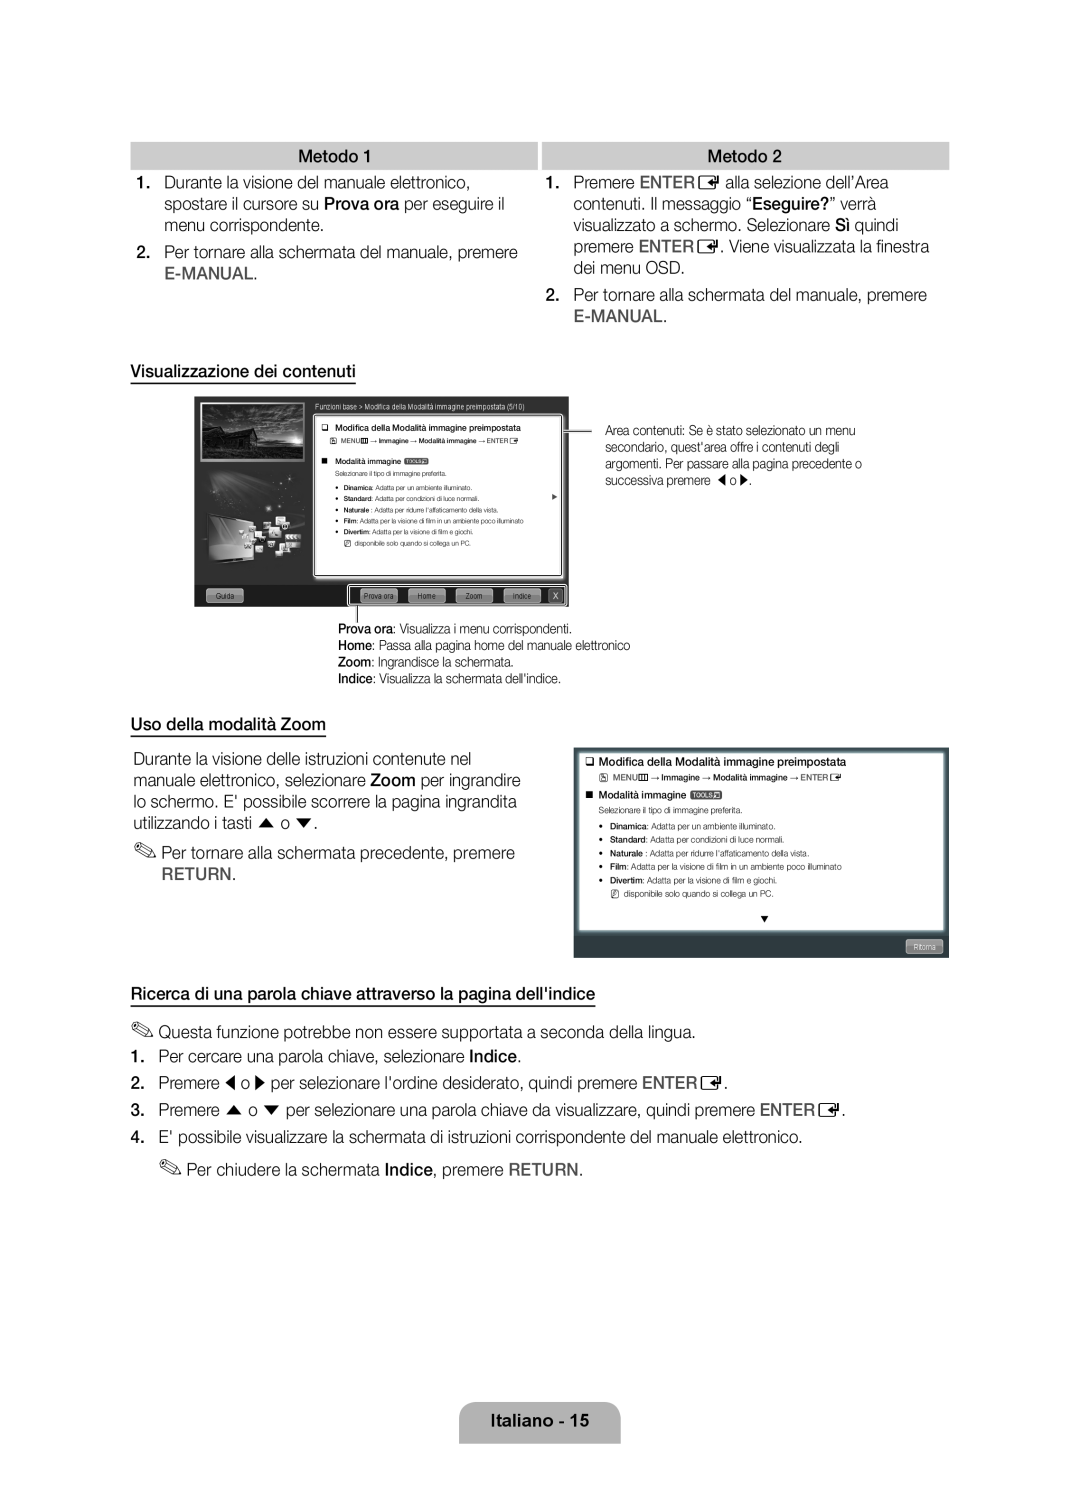 Samsung UE46D6500VSXZG manual Return, Italiano, ‰‰Modifica della Modalità immagine preimpostata, Modalità immagine t 